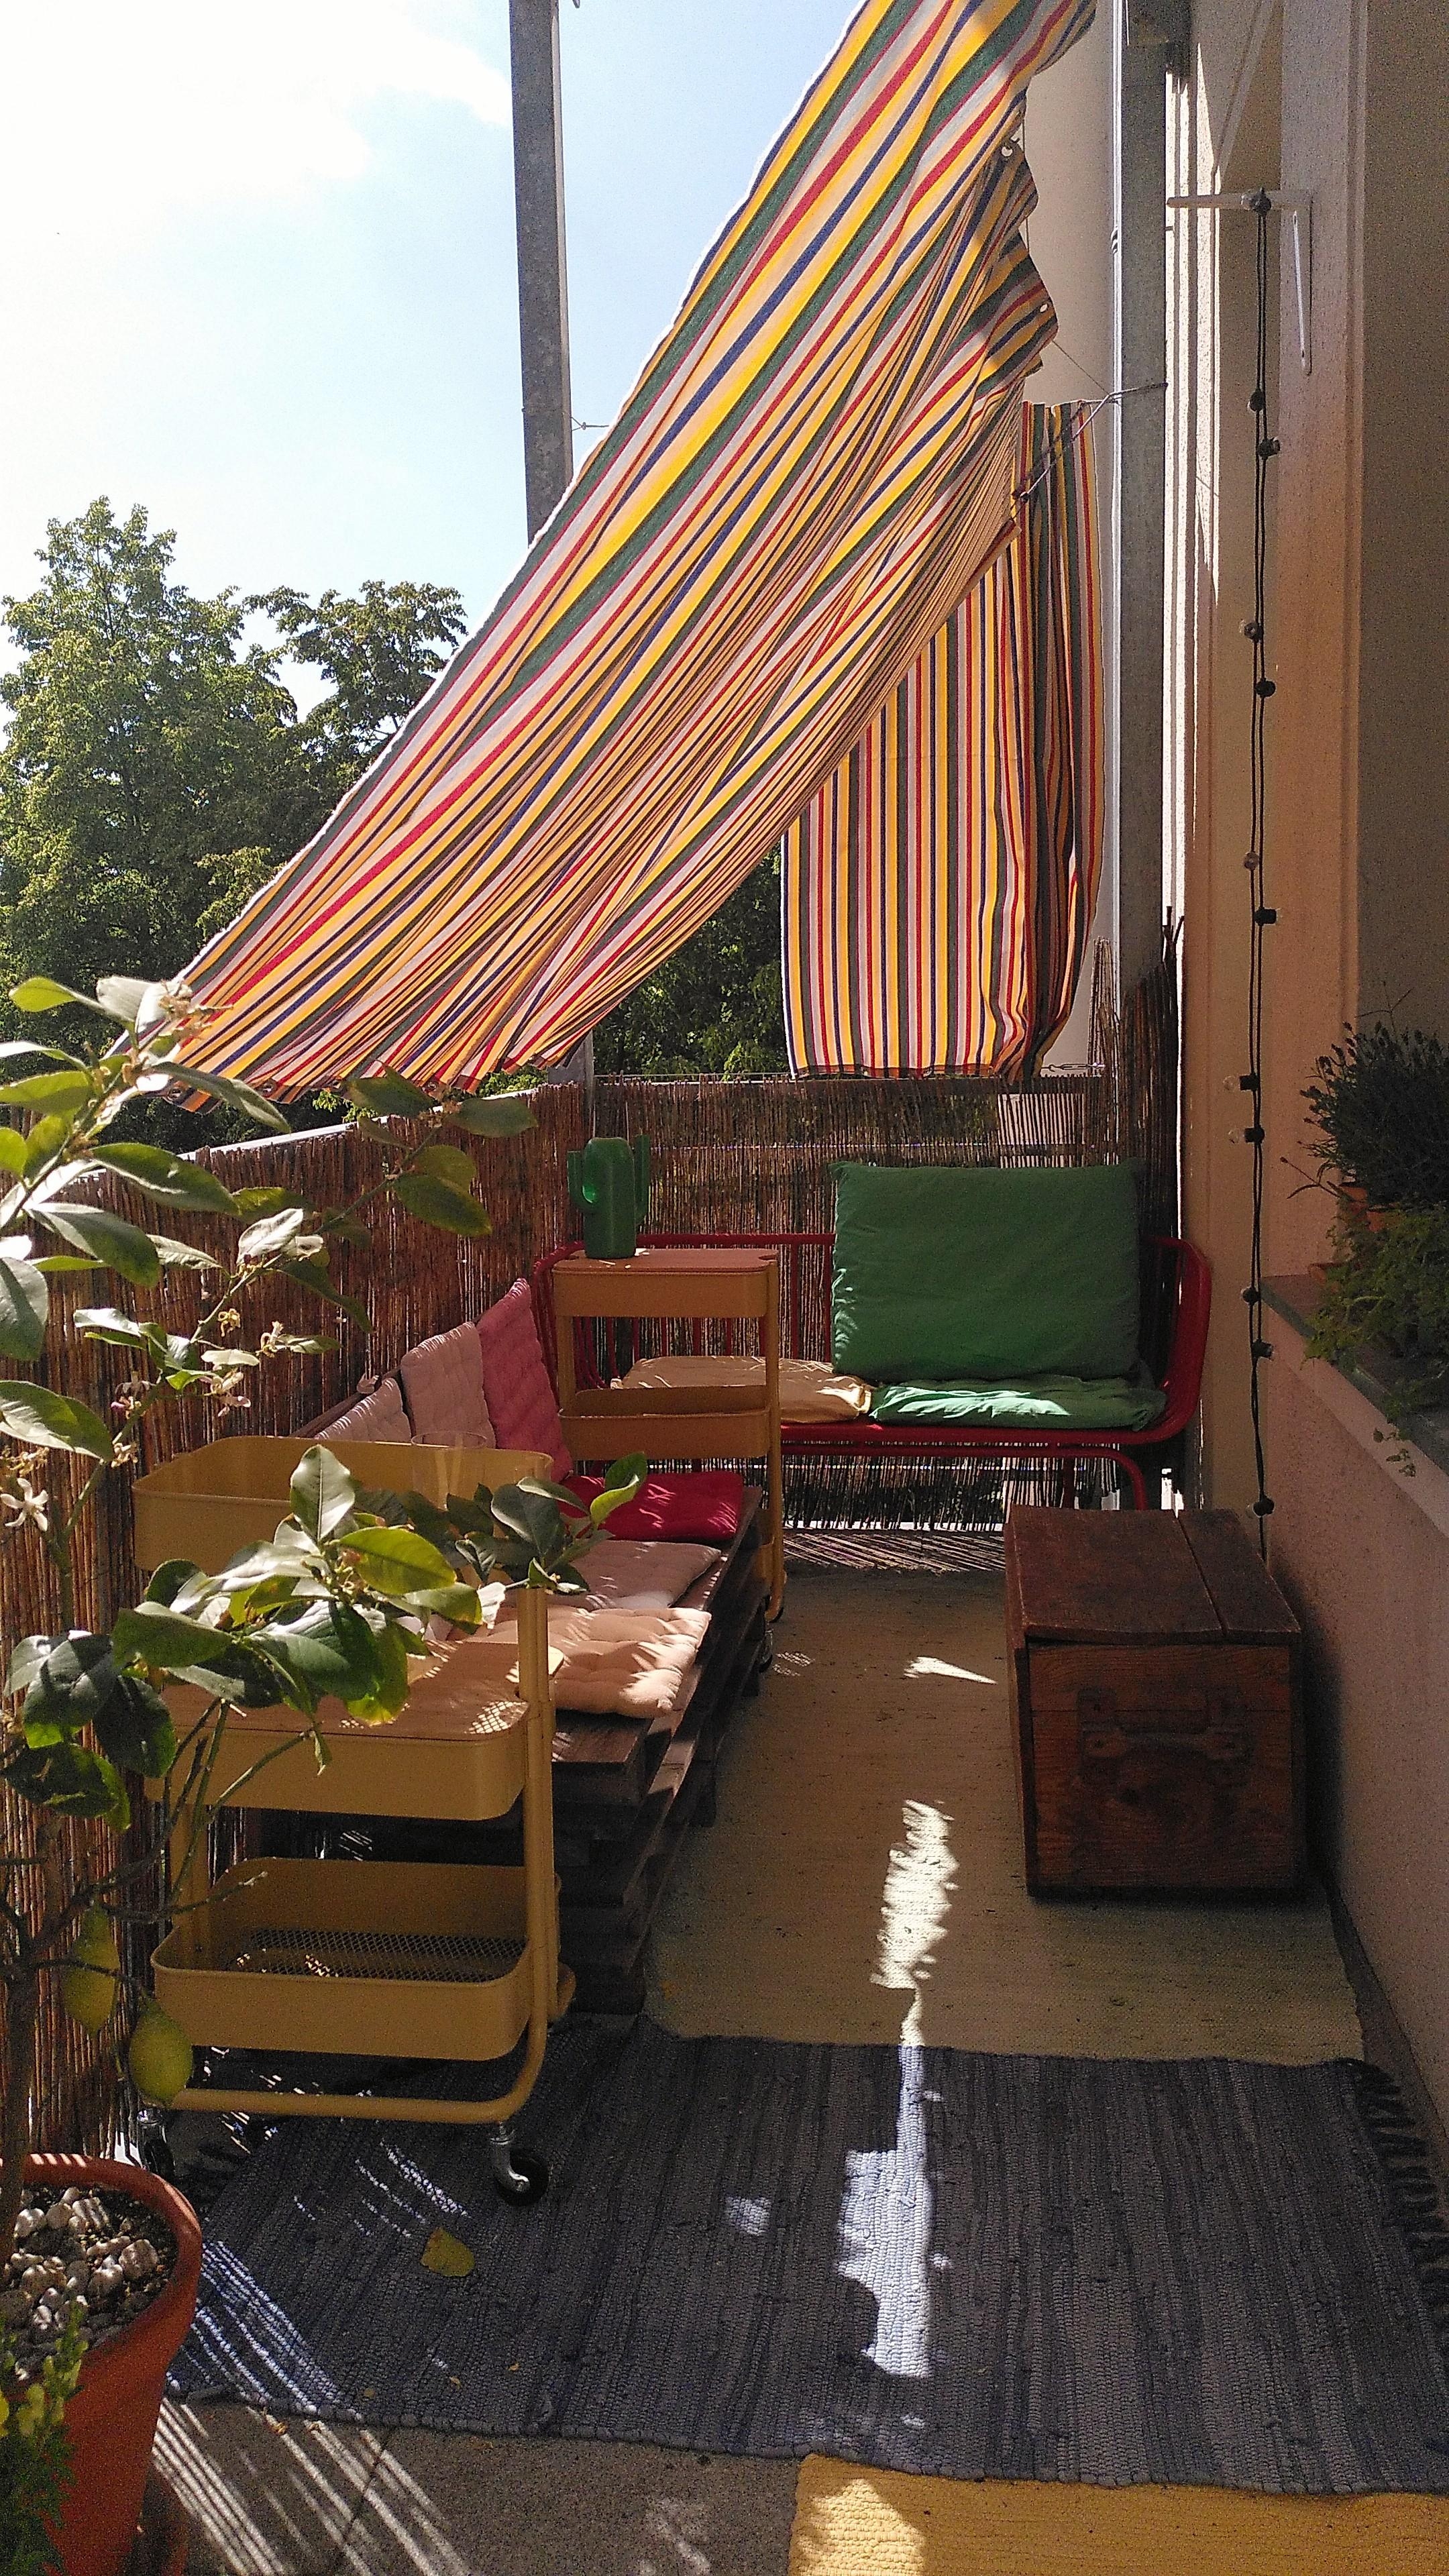 #Balkon + #Sonne + #Sonnenschutz = einfach perfekt fürs Wochenende. 